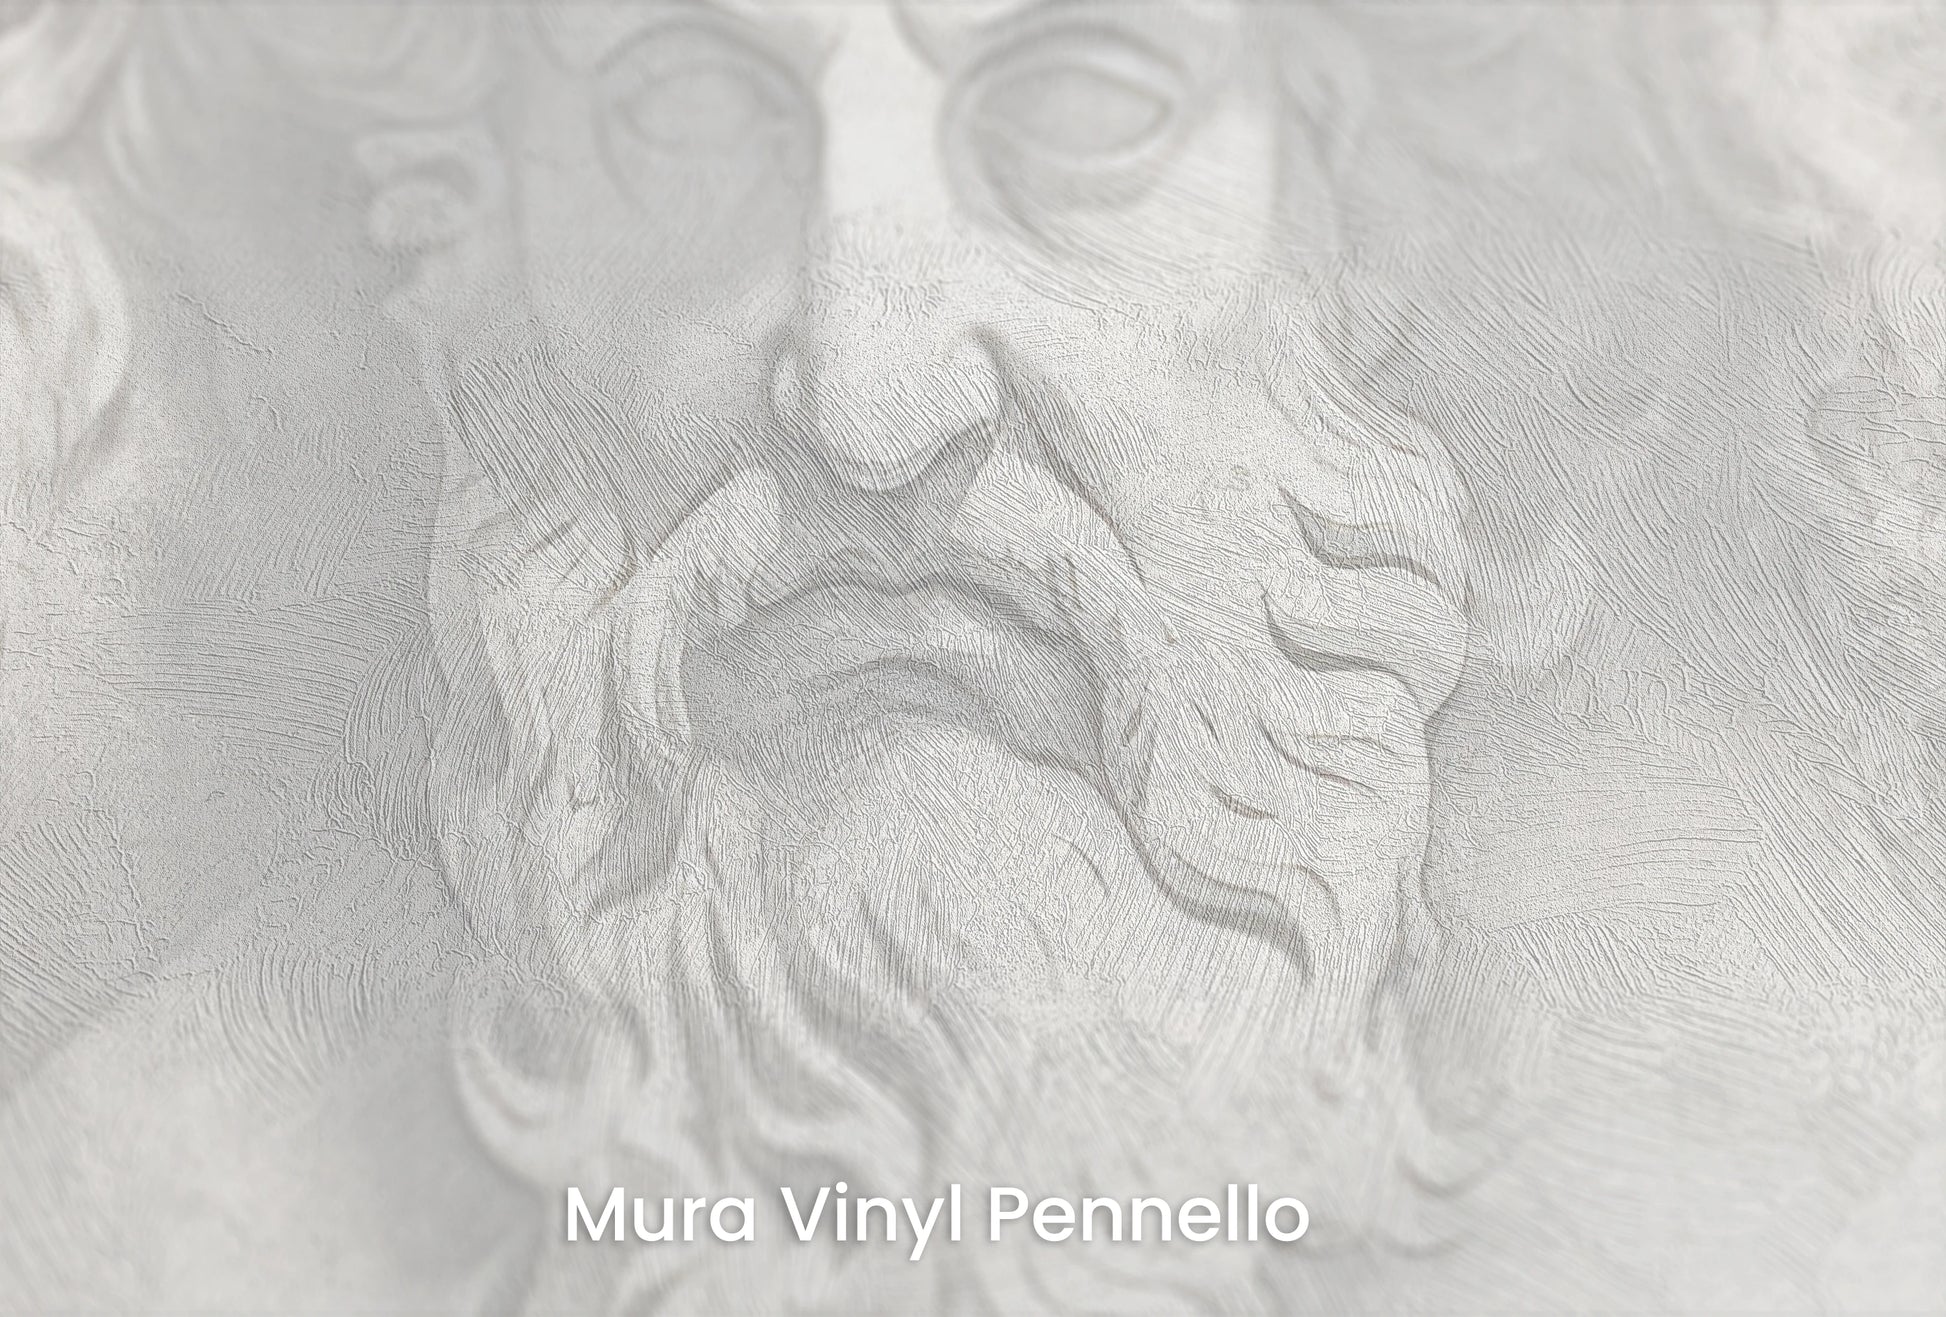 Zbliżenie na artystyczną fototapetę o nazwie Philosophers' Musings na podłożu Mura Vinyl Pennello - faktura pociągnięć pędzla malarskiego.